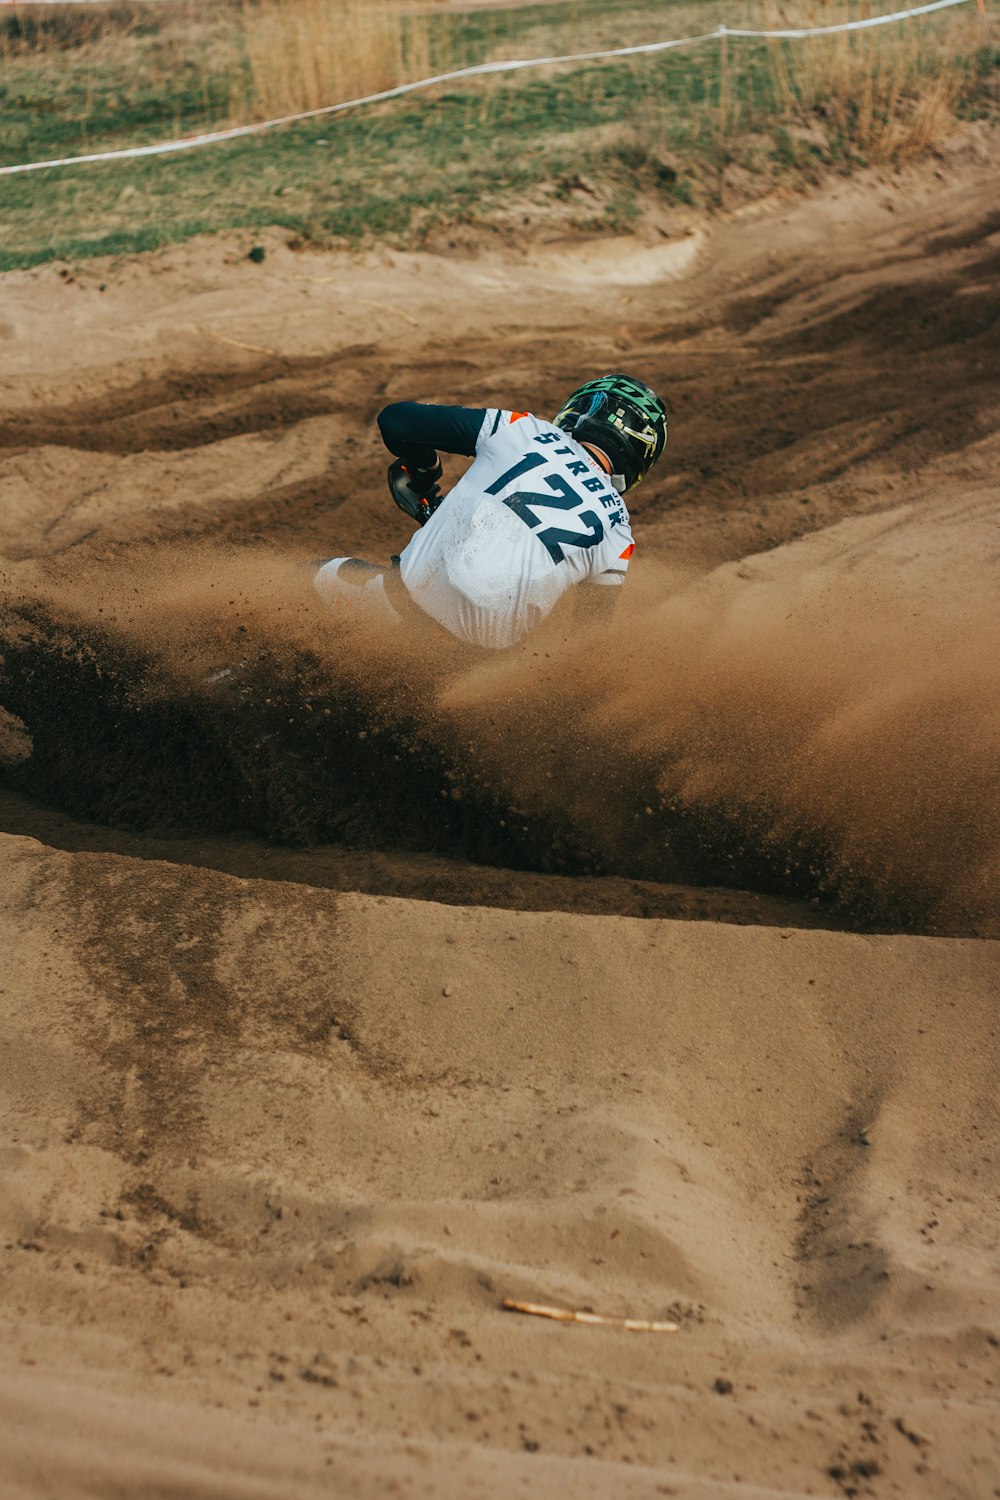 a man riding a dirt bike on top of a dirt field